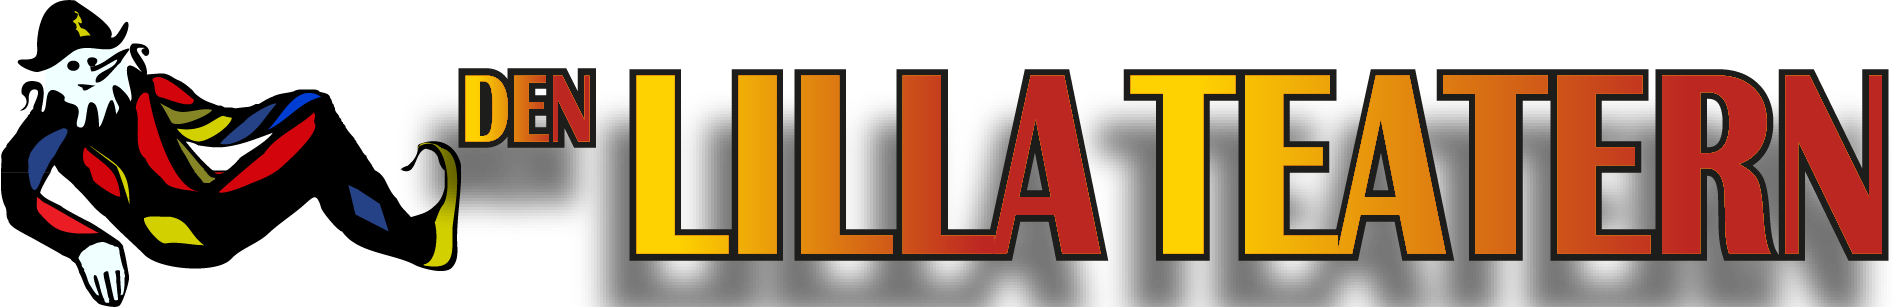 Den Lilla Teaterns logotype